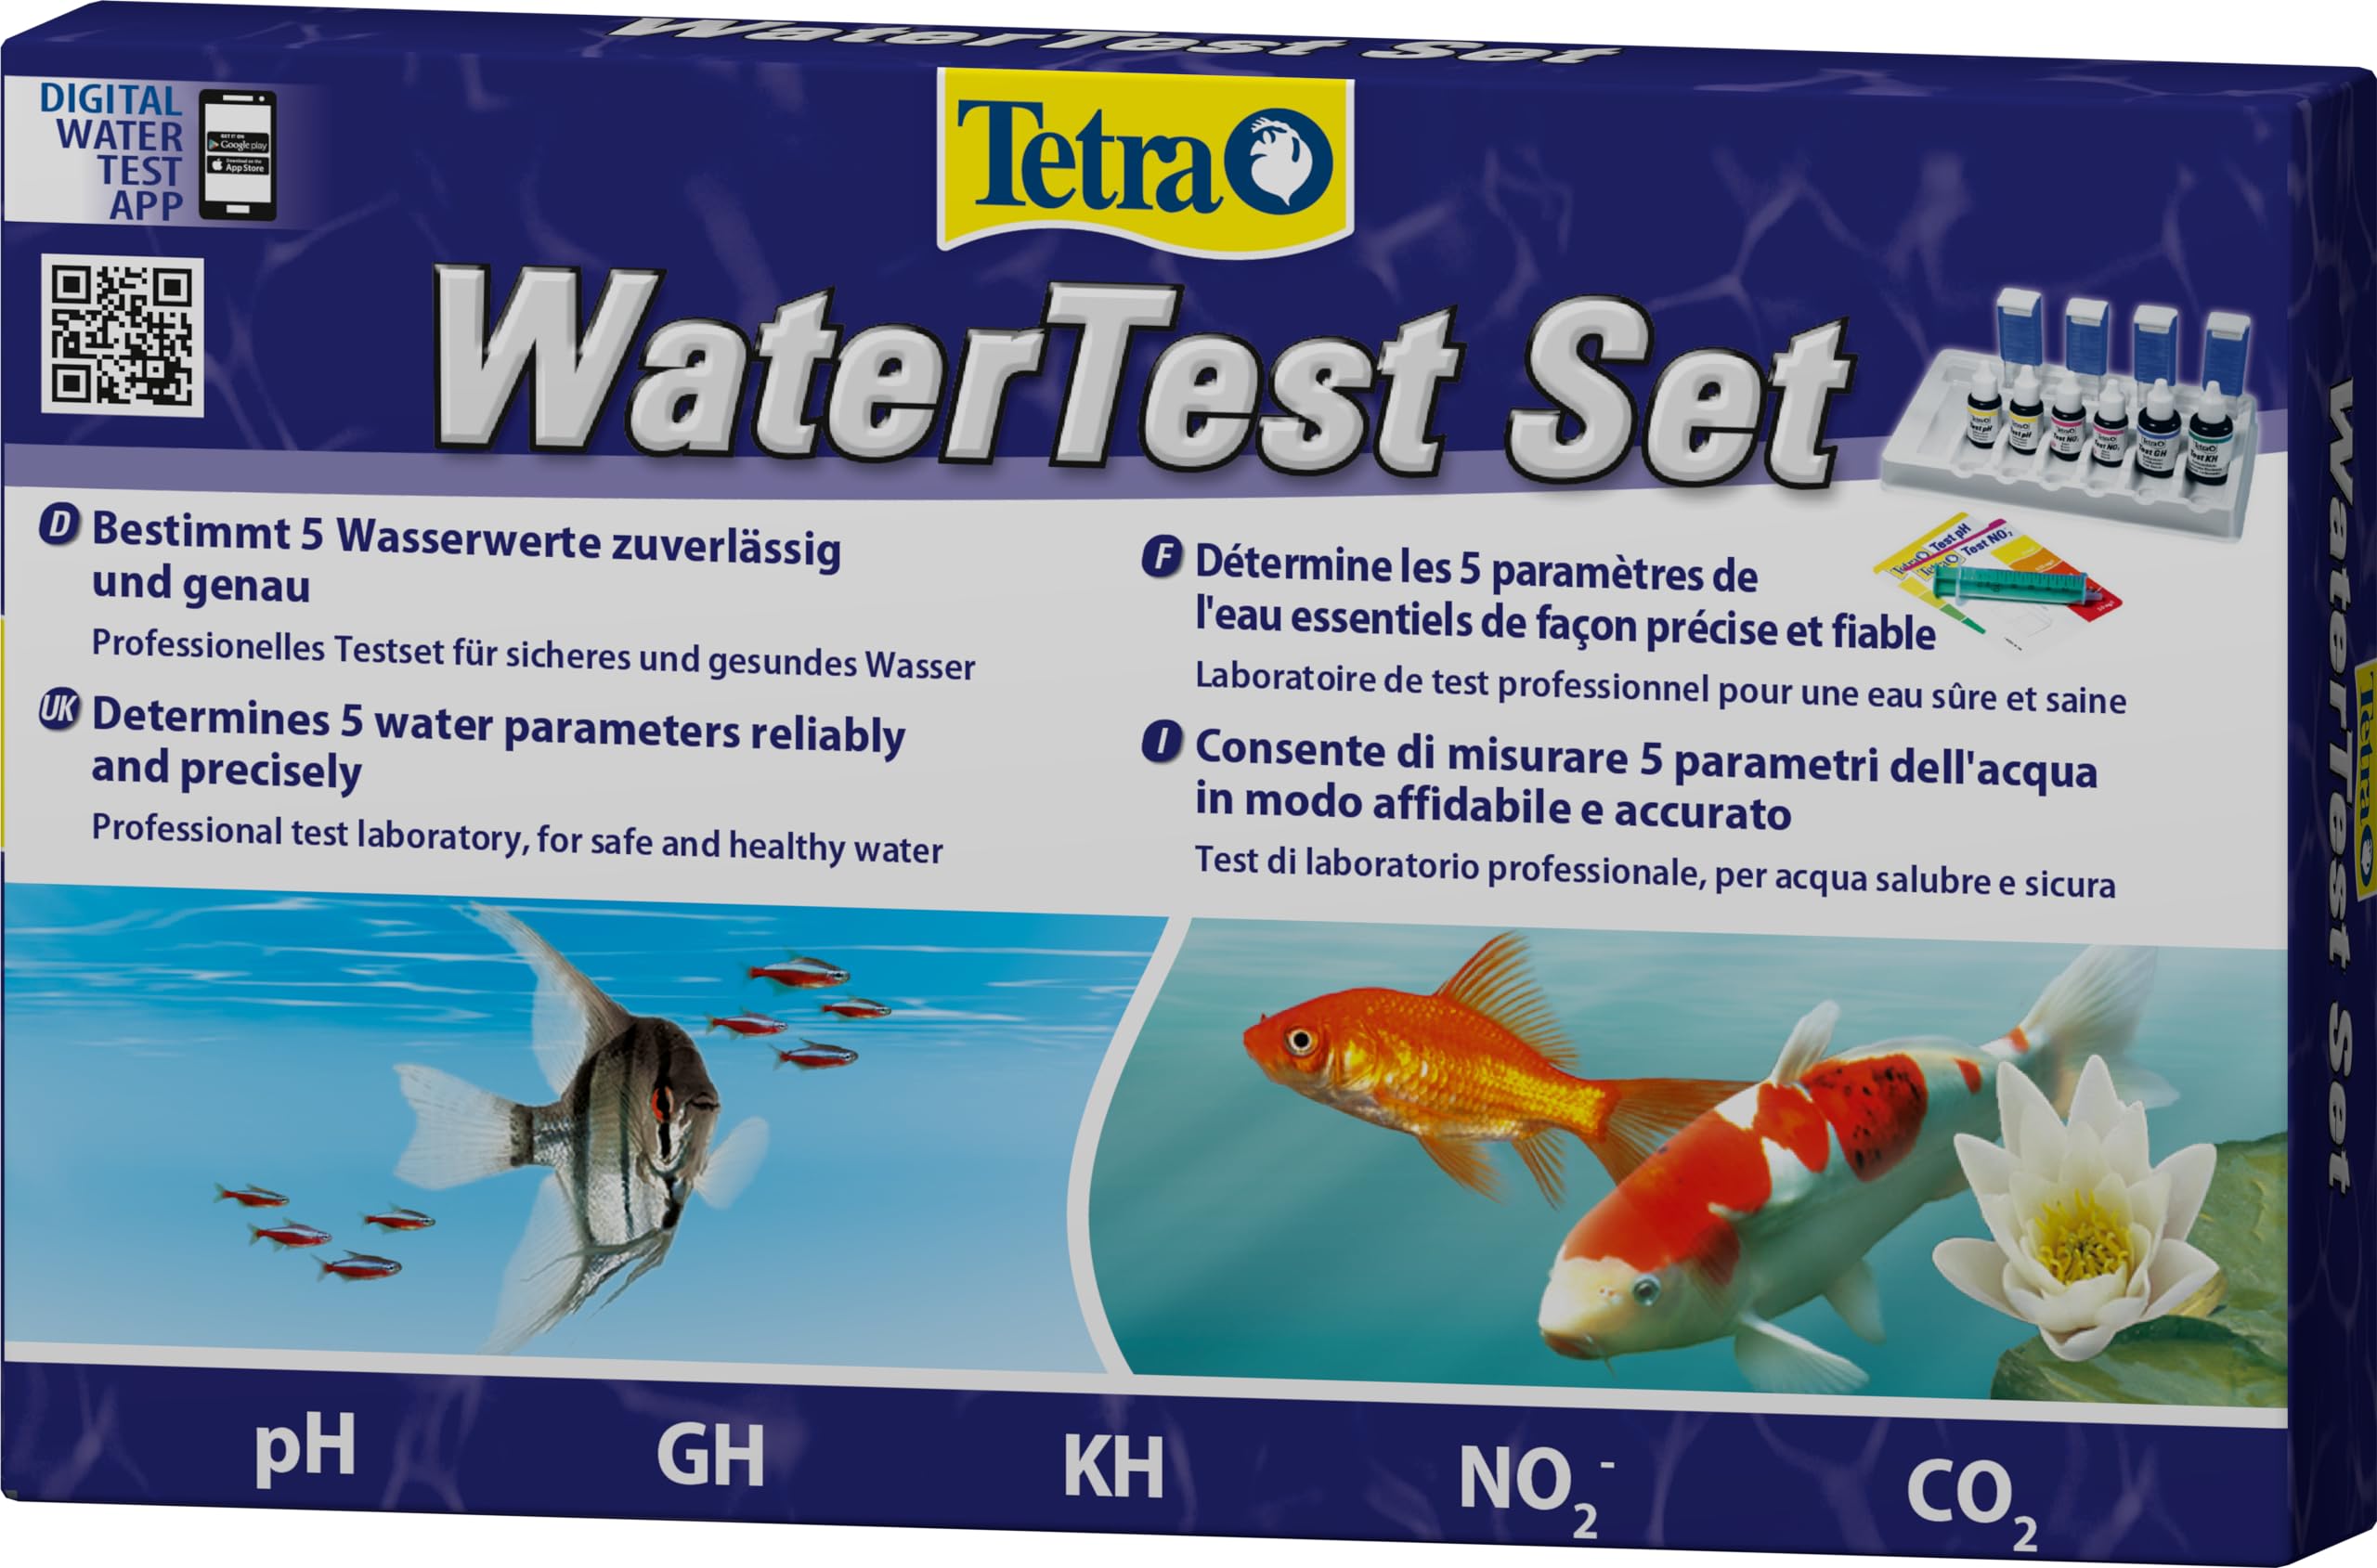 Tetra WaterTest Set - bestimmt zuverlässig & genau 5 wichtige Wasserwerten im Aquarium oder Gartenteich, professionelles Testlabor, 1 Stück